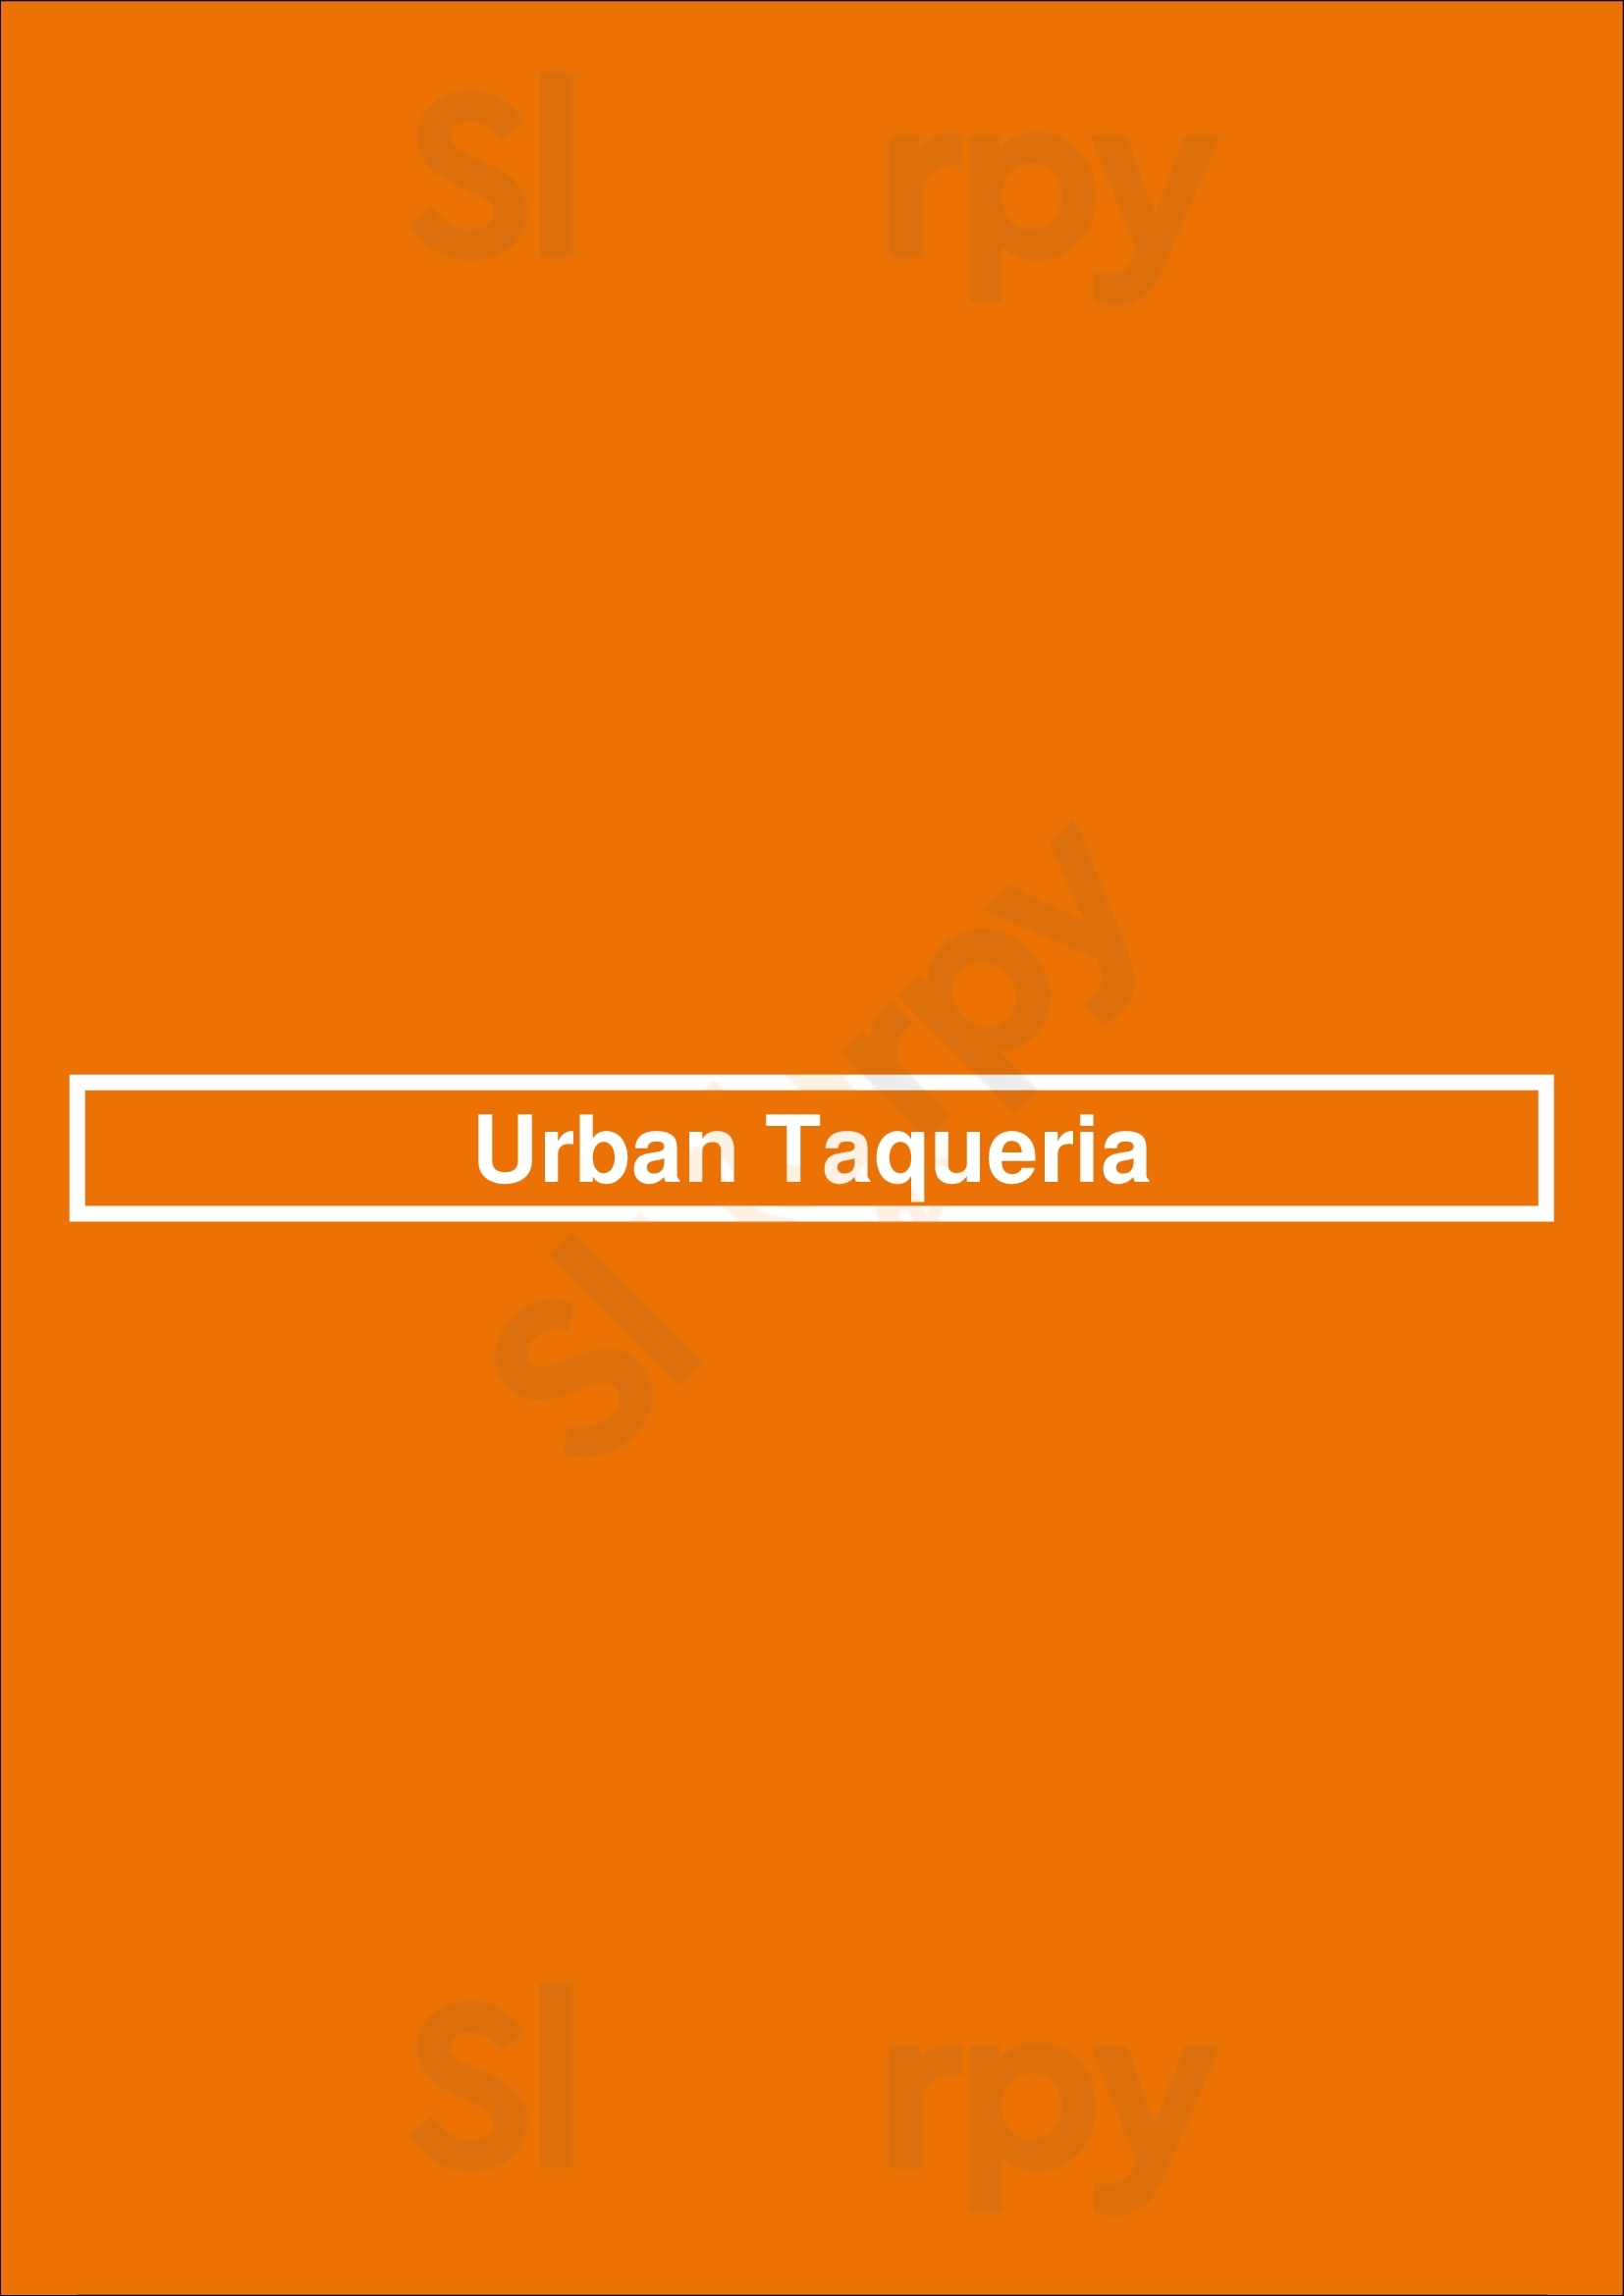 Urban Taqueria Albuquerque Menu - 1